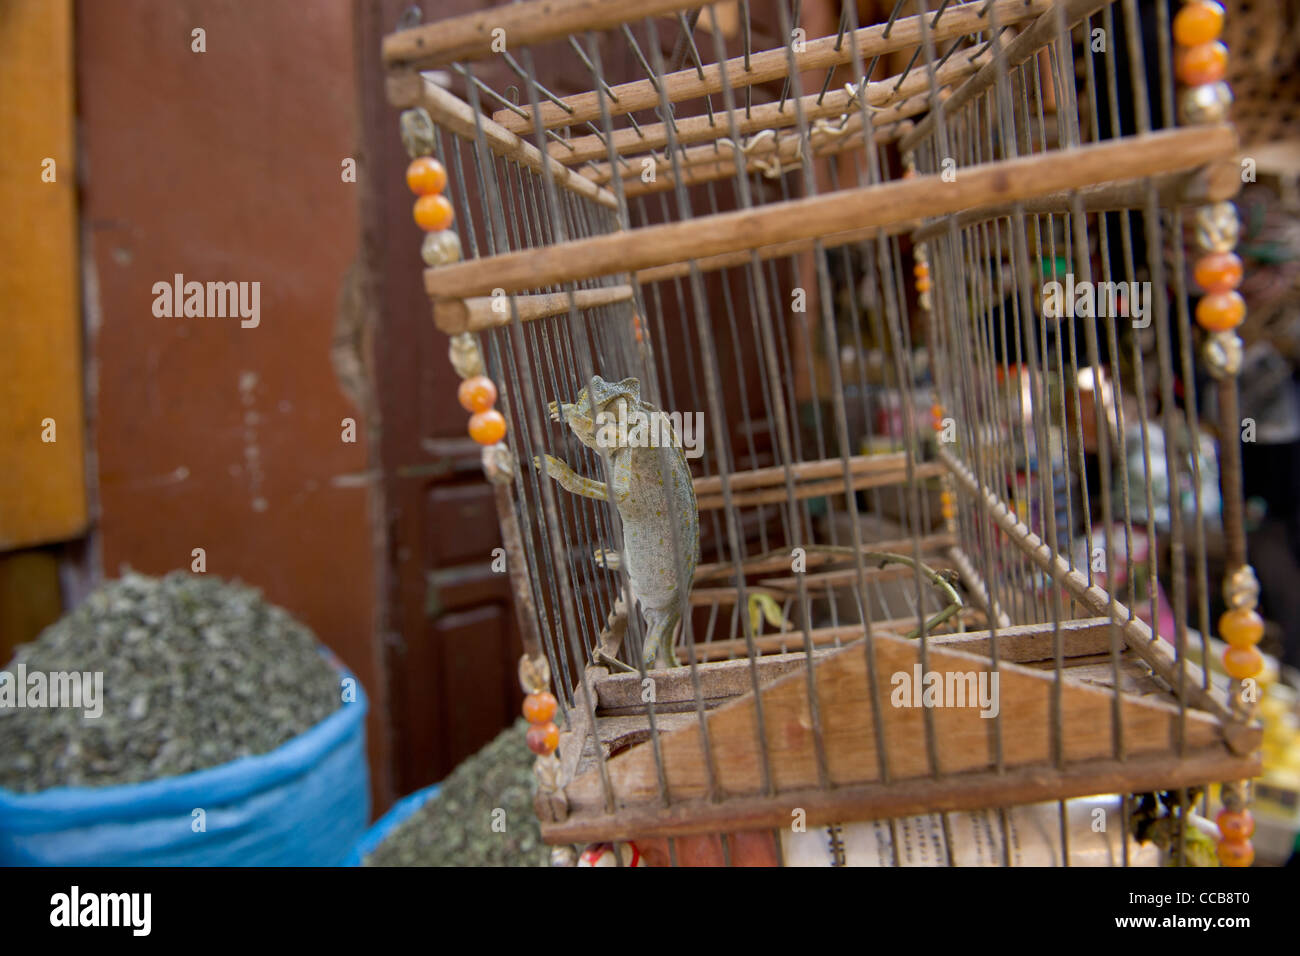 Camaleonte comune (Chamaeleo chamaeleon) in una gabbia nel mercato delle spezie del souk di Marrakech, Marocco Foto Stock